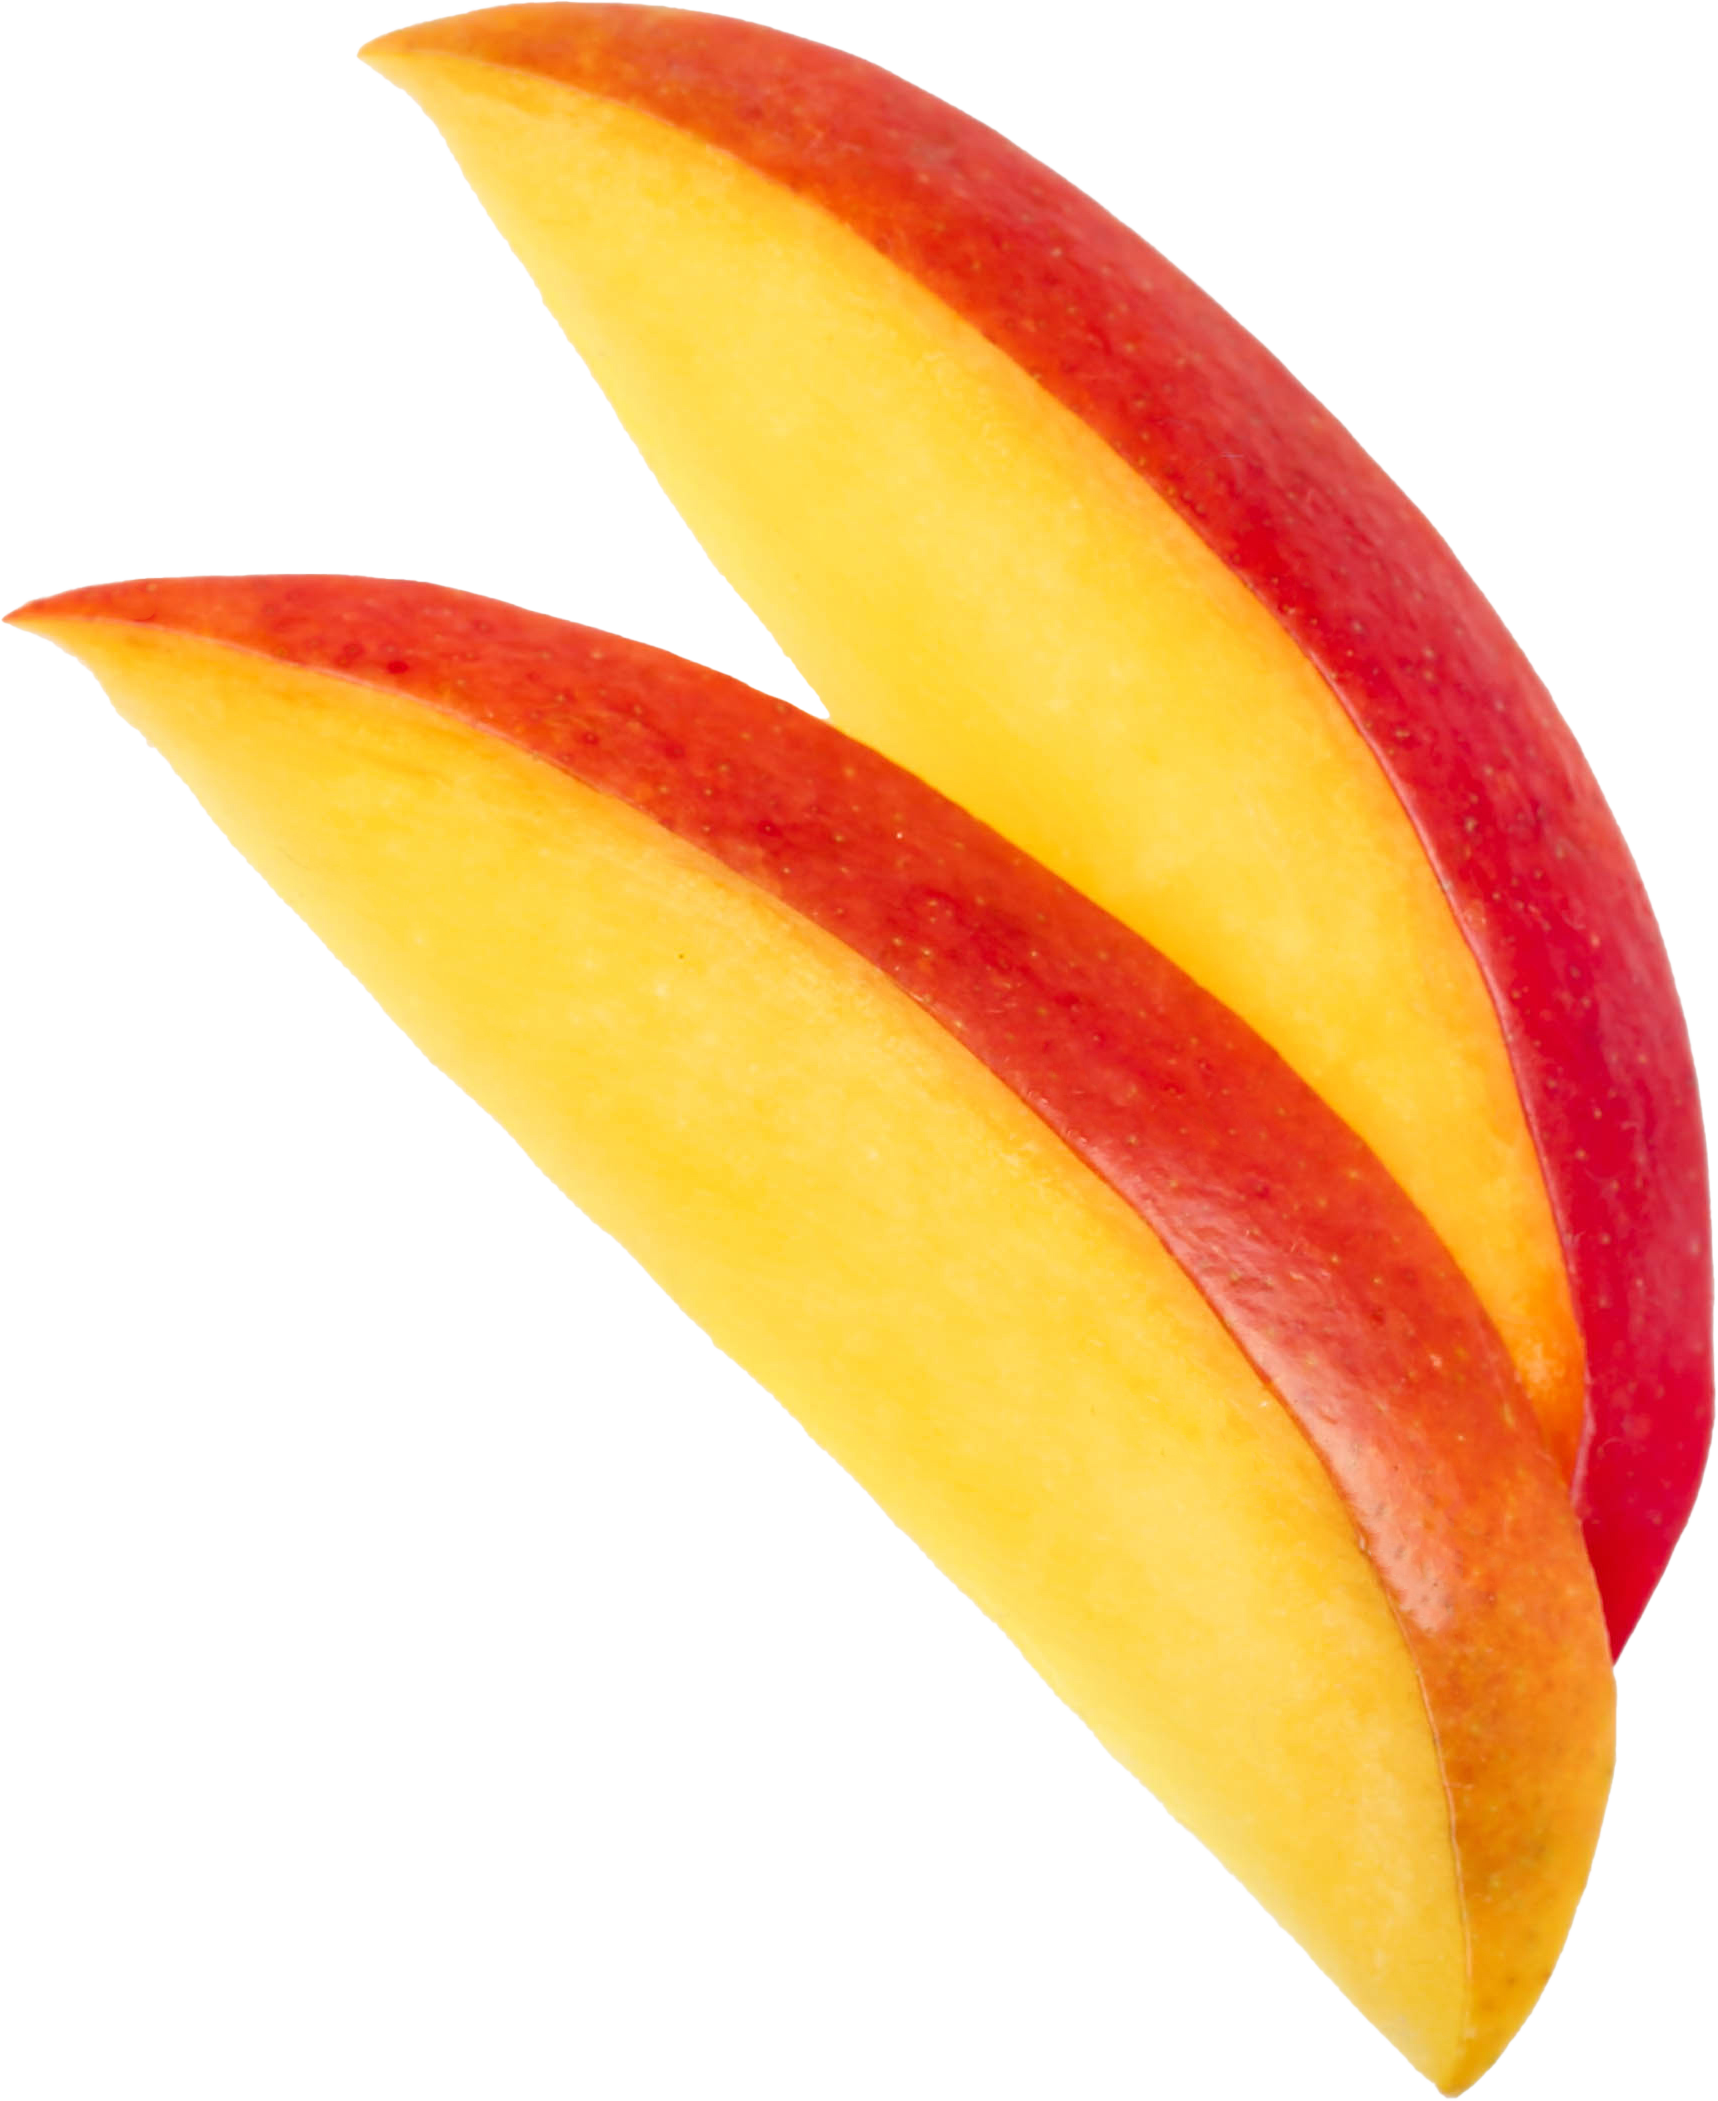 Des tranches de mangue